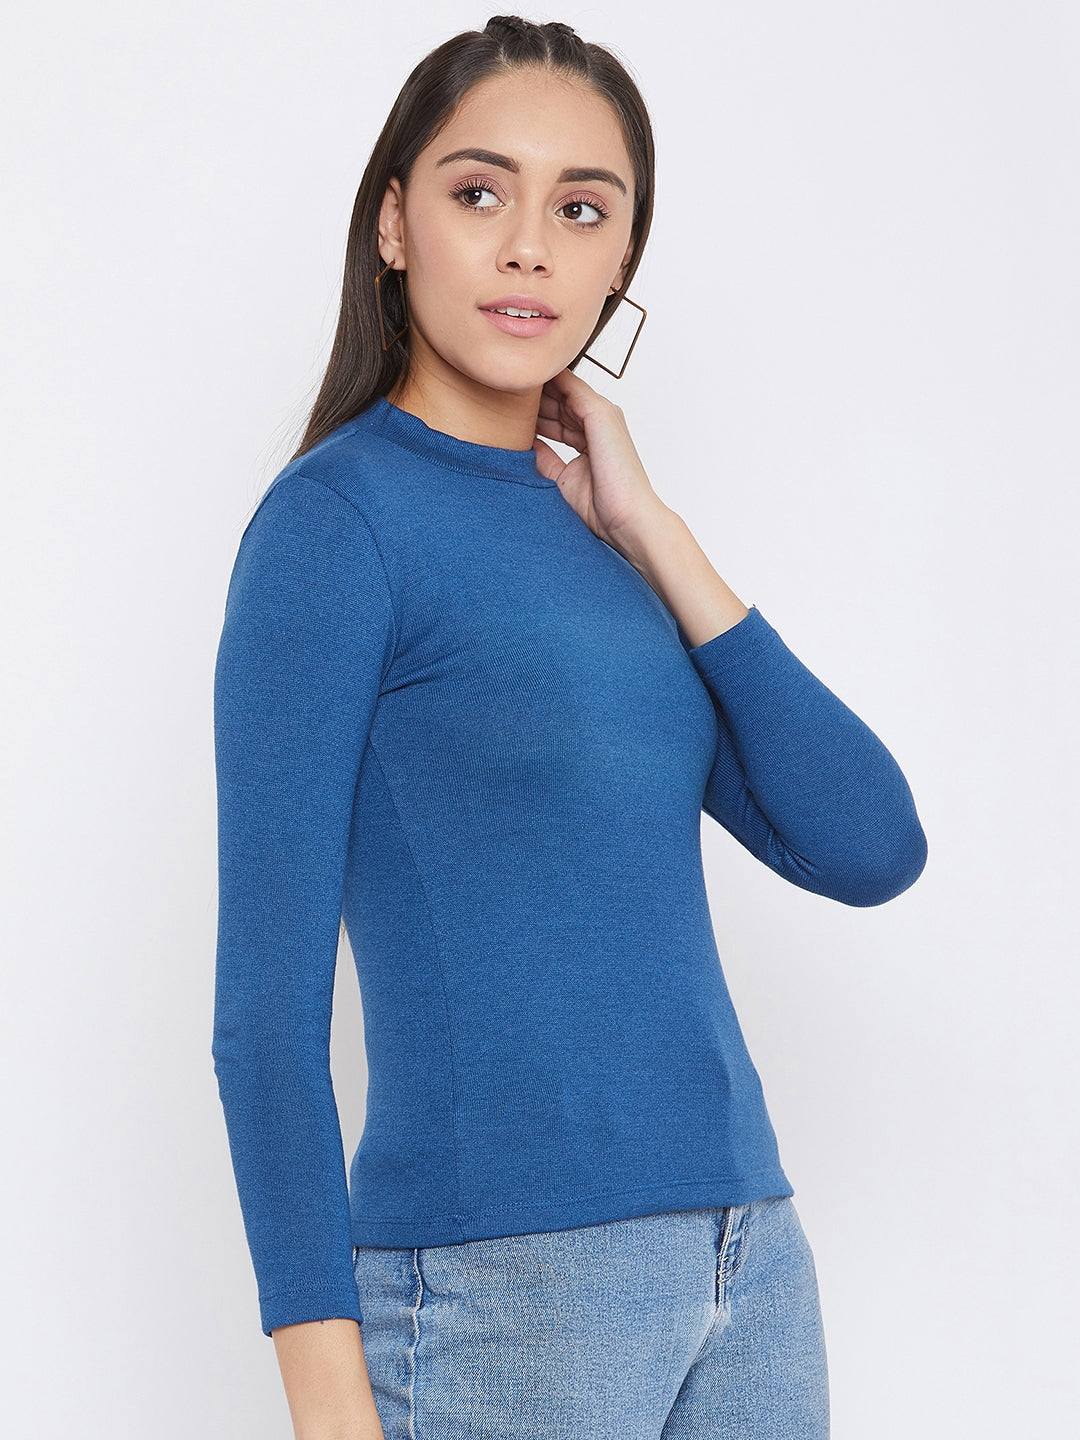 Blue Round Neck Sweatshirt - Women Sweatshirts